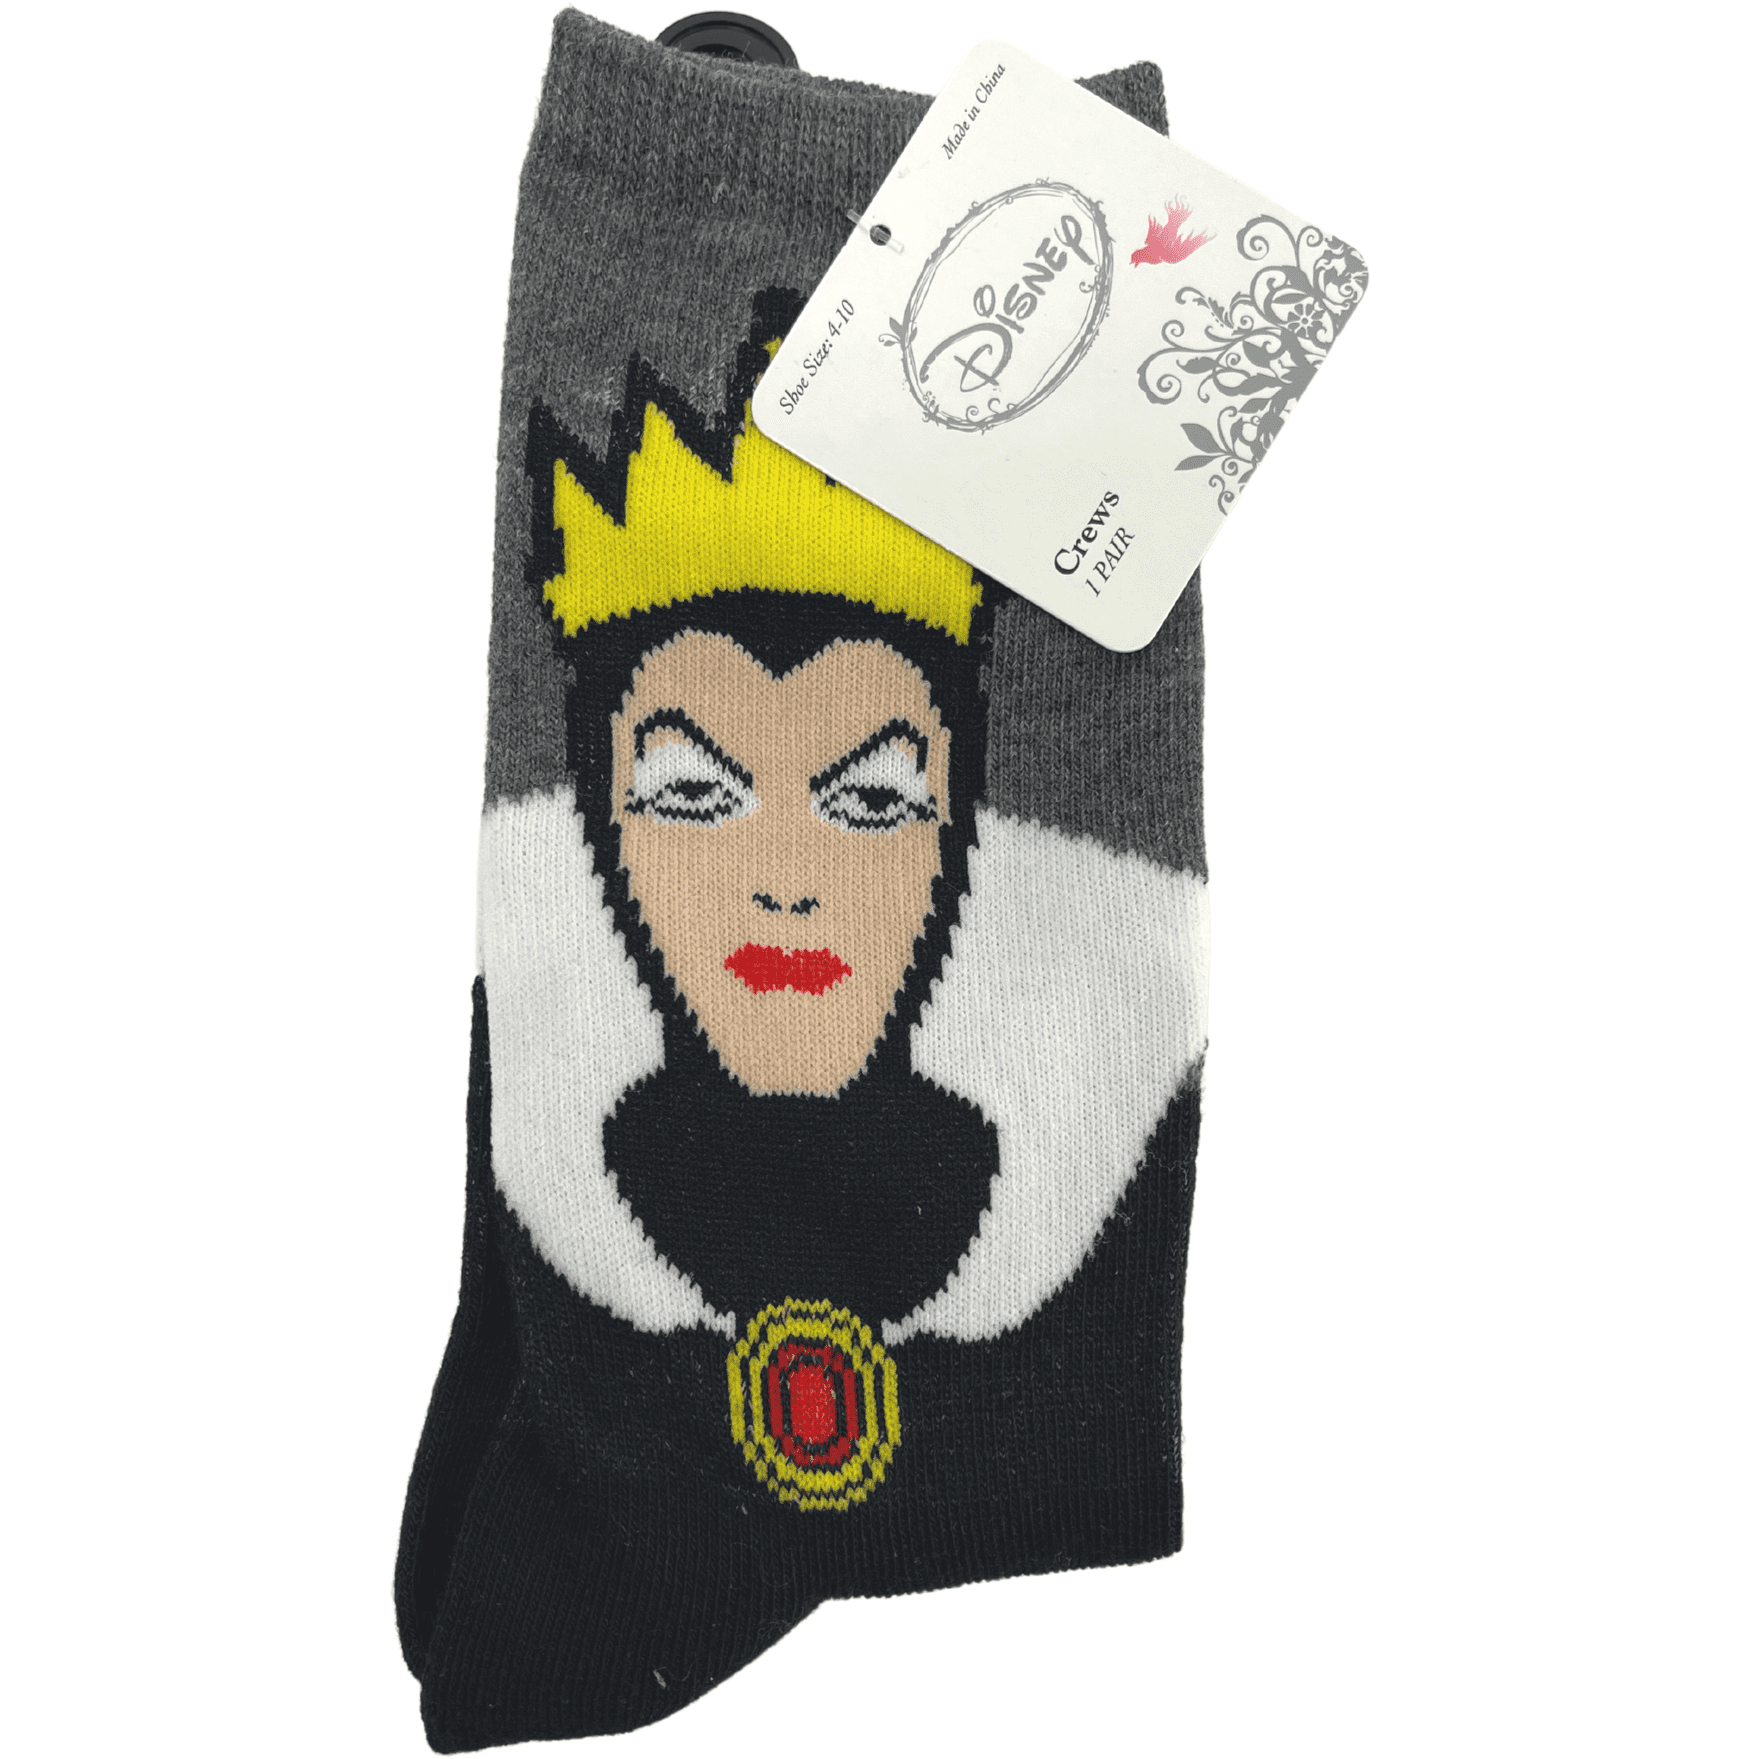 Disney Women's Socks / Crew Socks / 1 Pair / Evil Queen from Snow White / Shoe Size 4-10